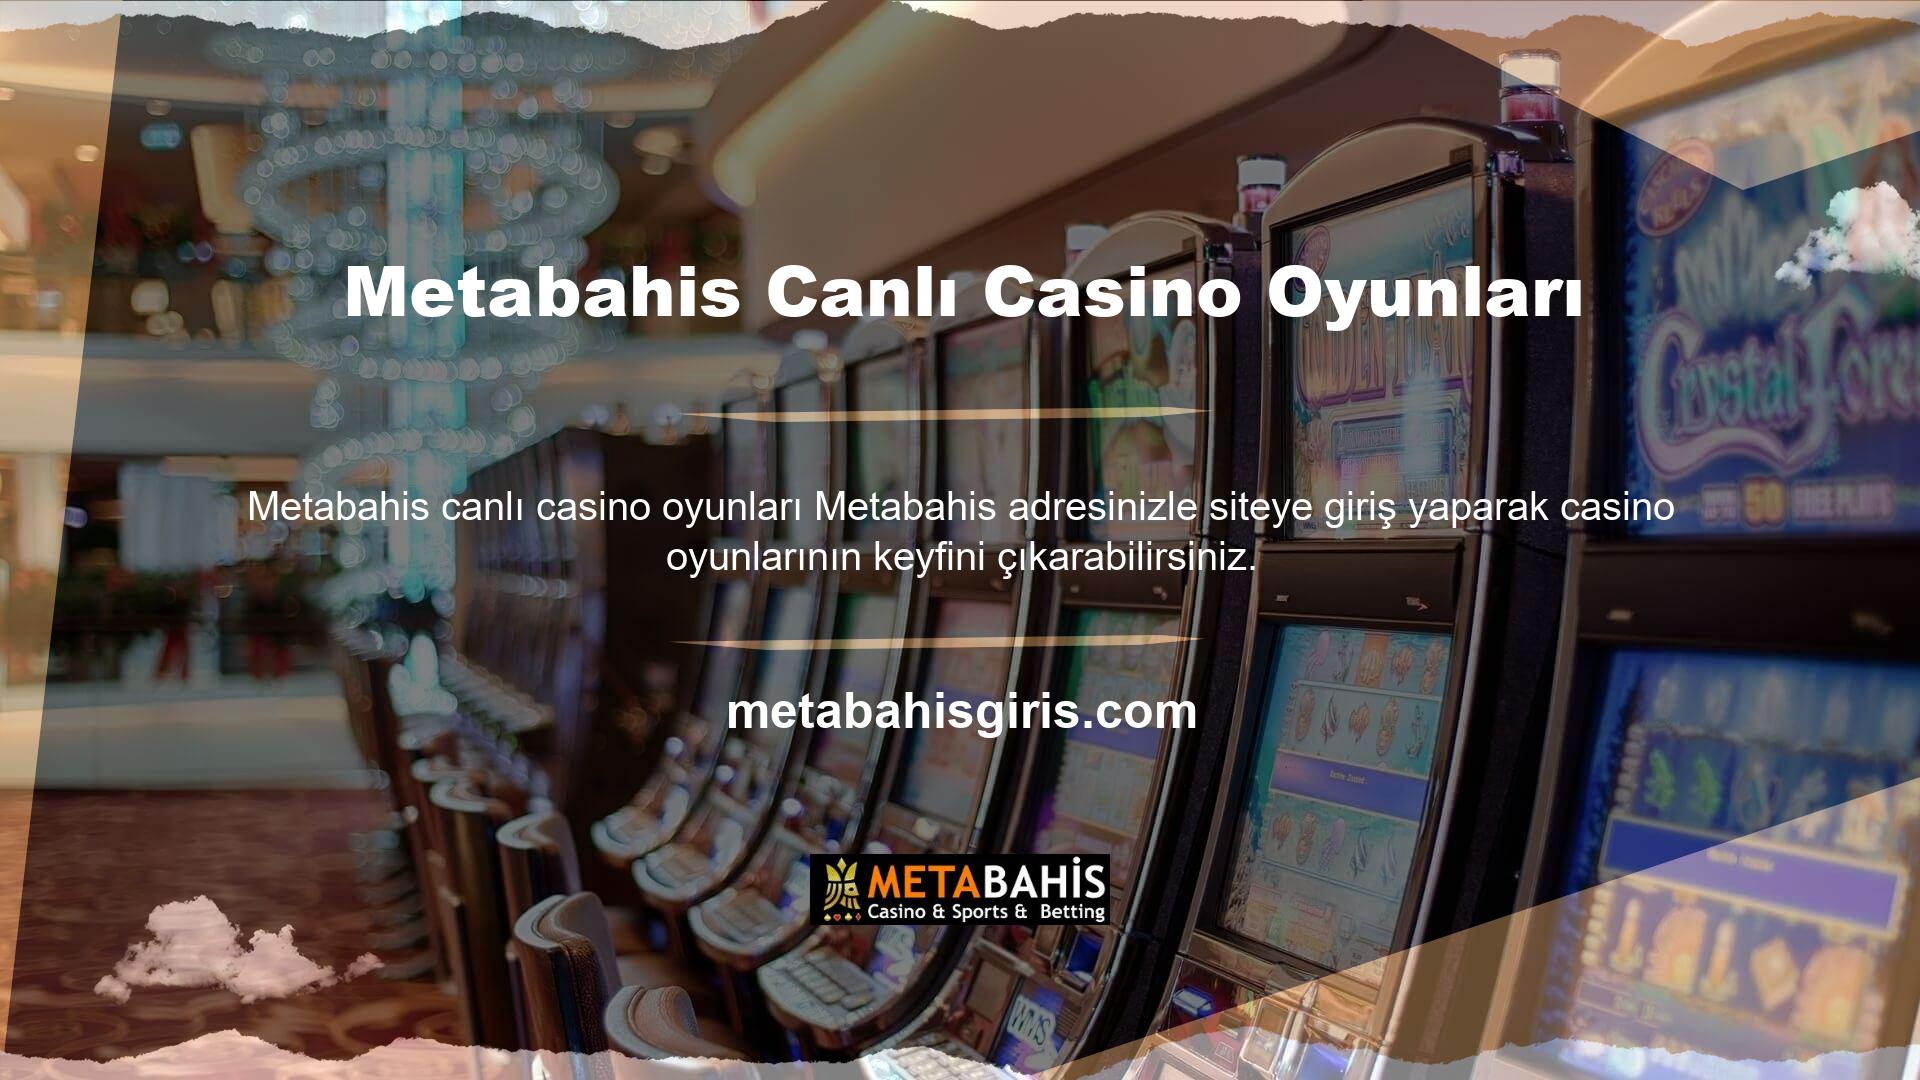 Metabahis bahisleri sadece Metabahis Casino'da değil, canlı casinoda da çok cazip ve karlı